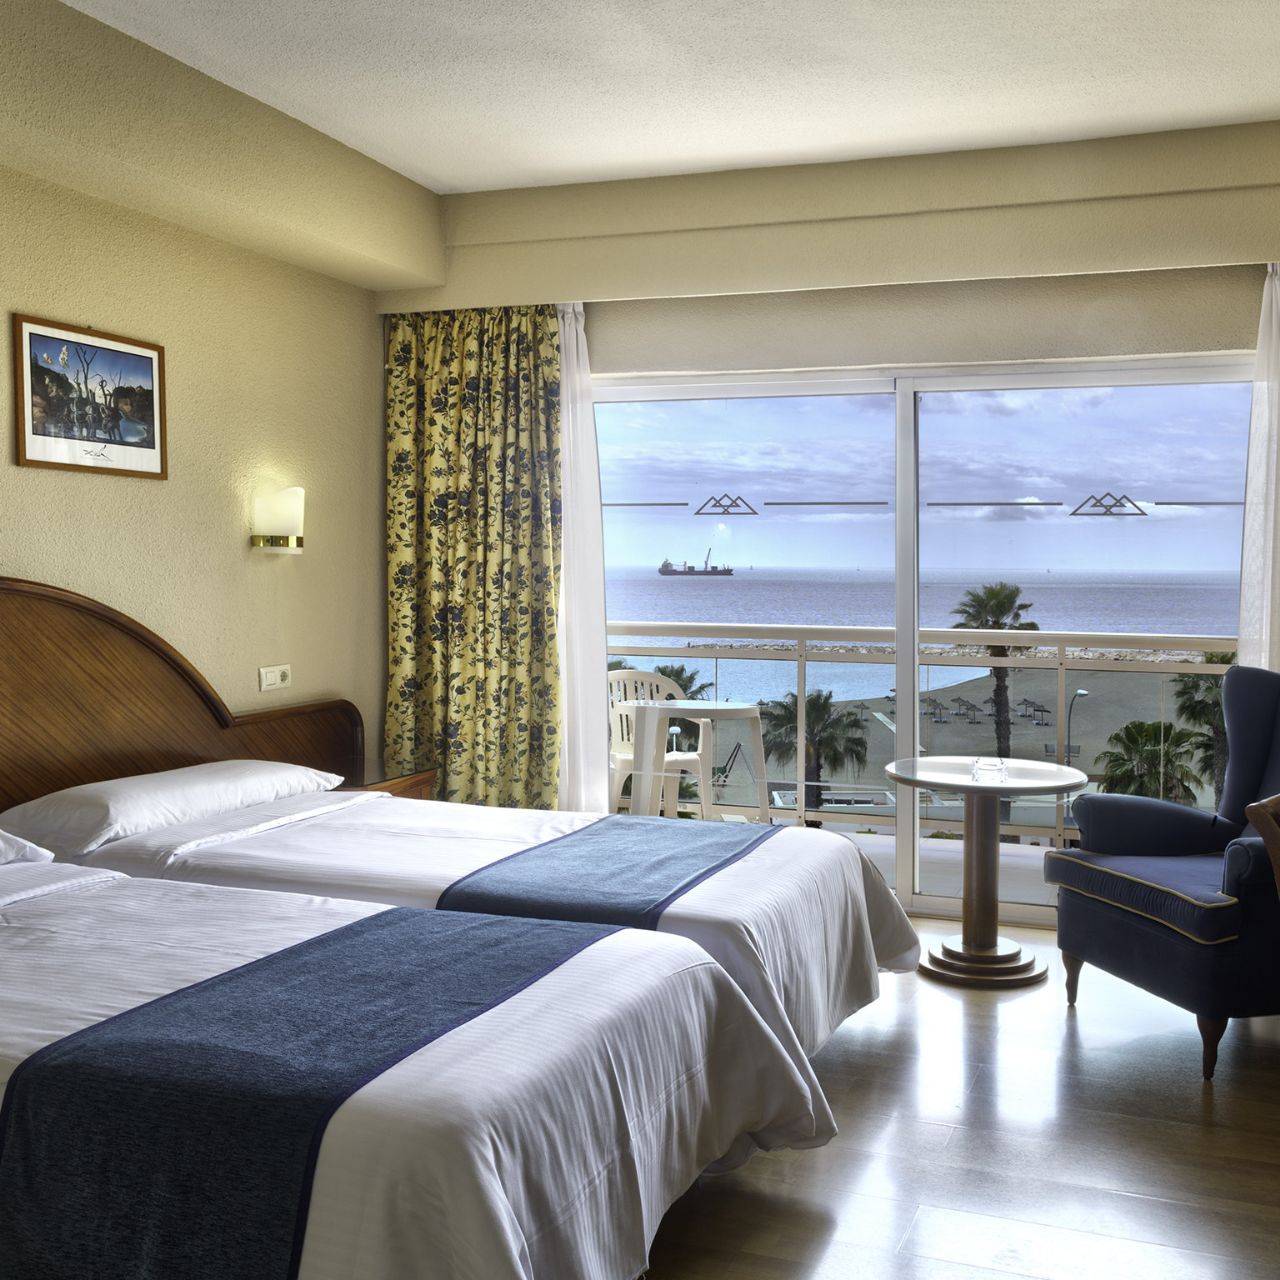 Hotel Soho Las Vegas - Málaga - Great prices at HOTEL INFO